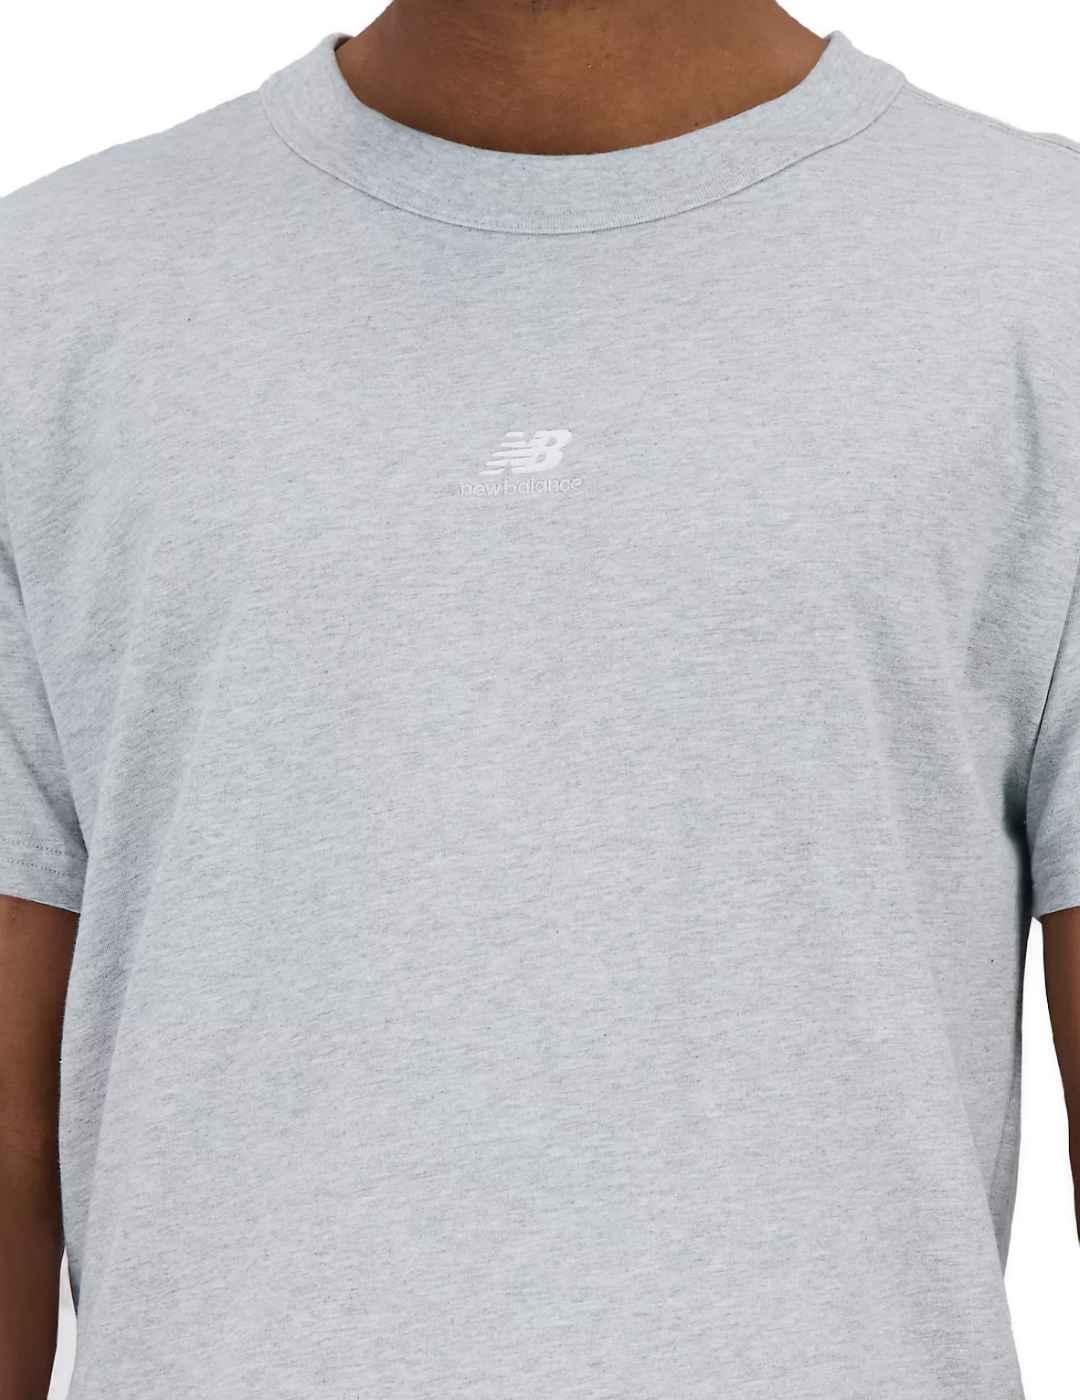 Camiseta New Balance gris manga corta para hombre